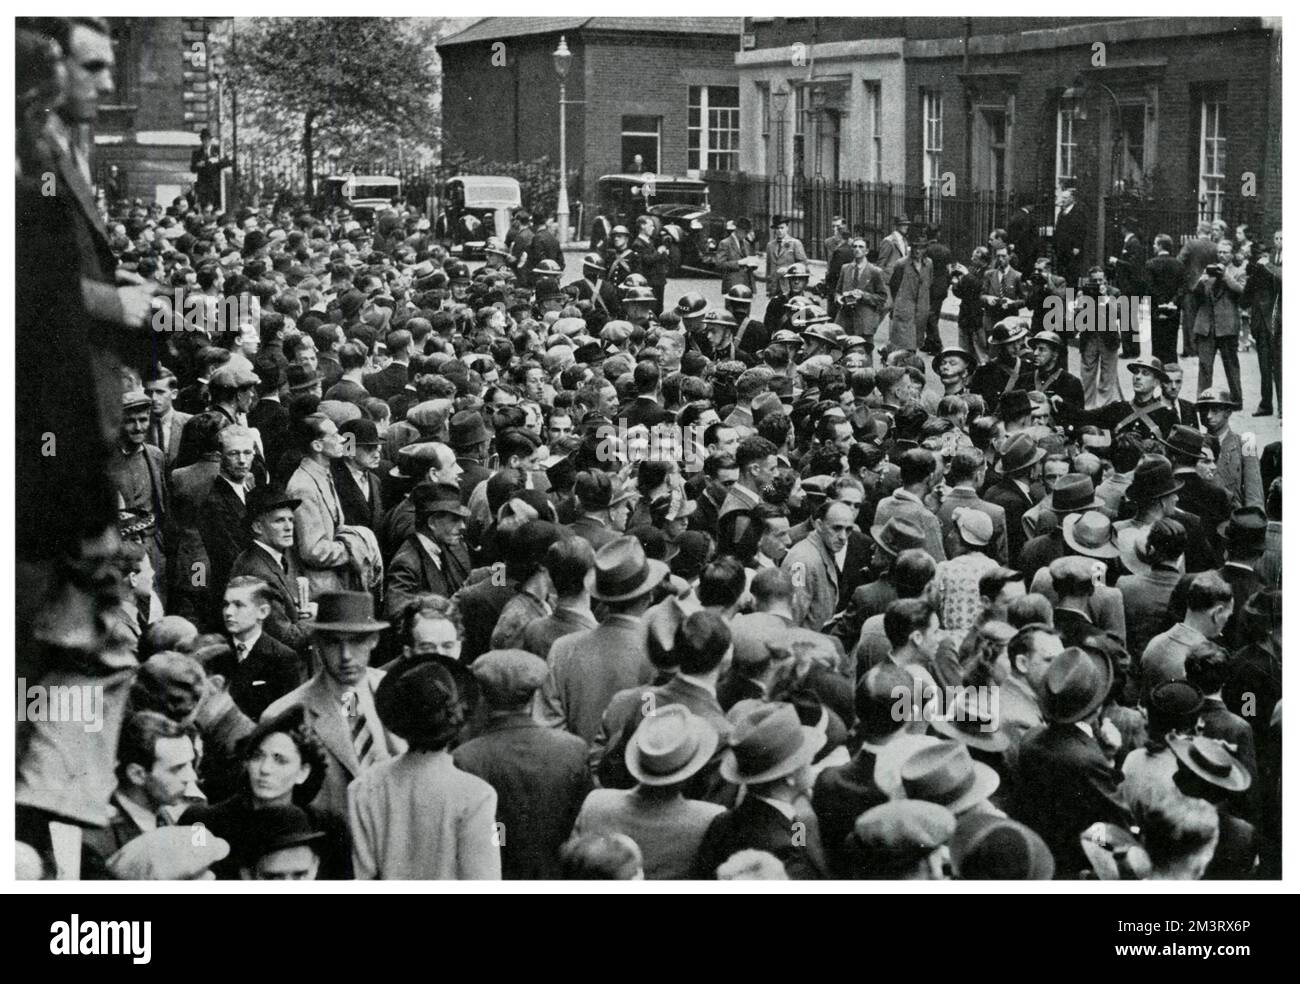 Am 3. September 1939 versammelte sich um 11 Uhr eine große Menschenmenge vor der Downing Street 10, zu der Zeit, als der Premierminister Neville Chamberlain die Kriegsmeldung ausstrahlte. Datum: 1939 Stockfoto